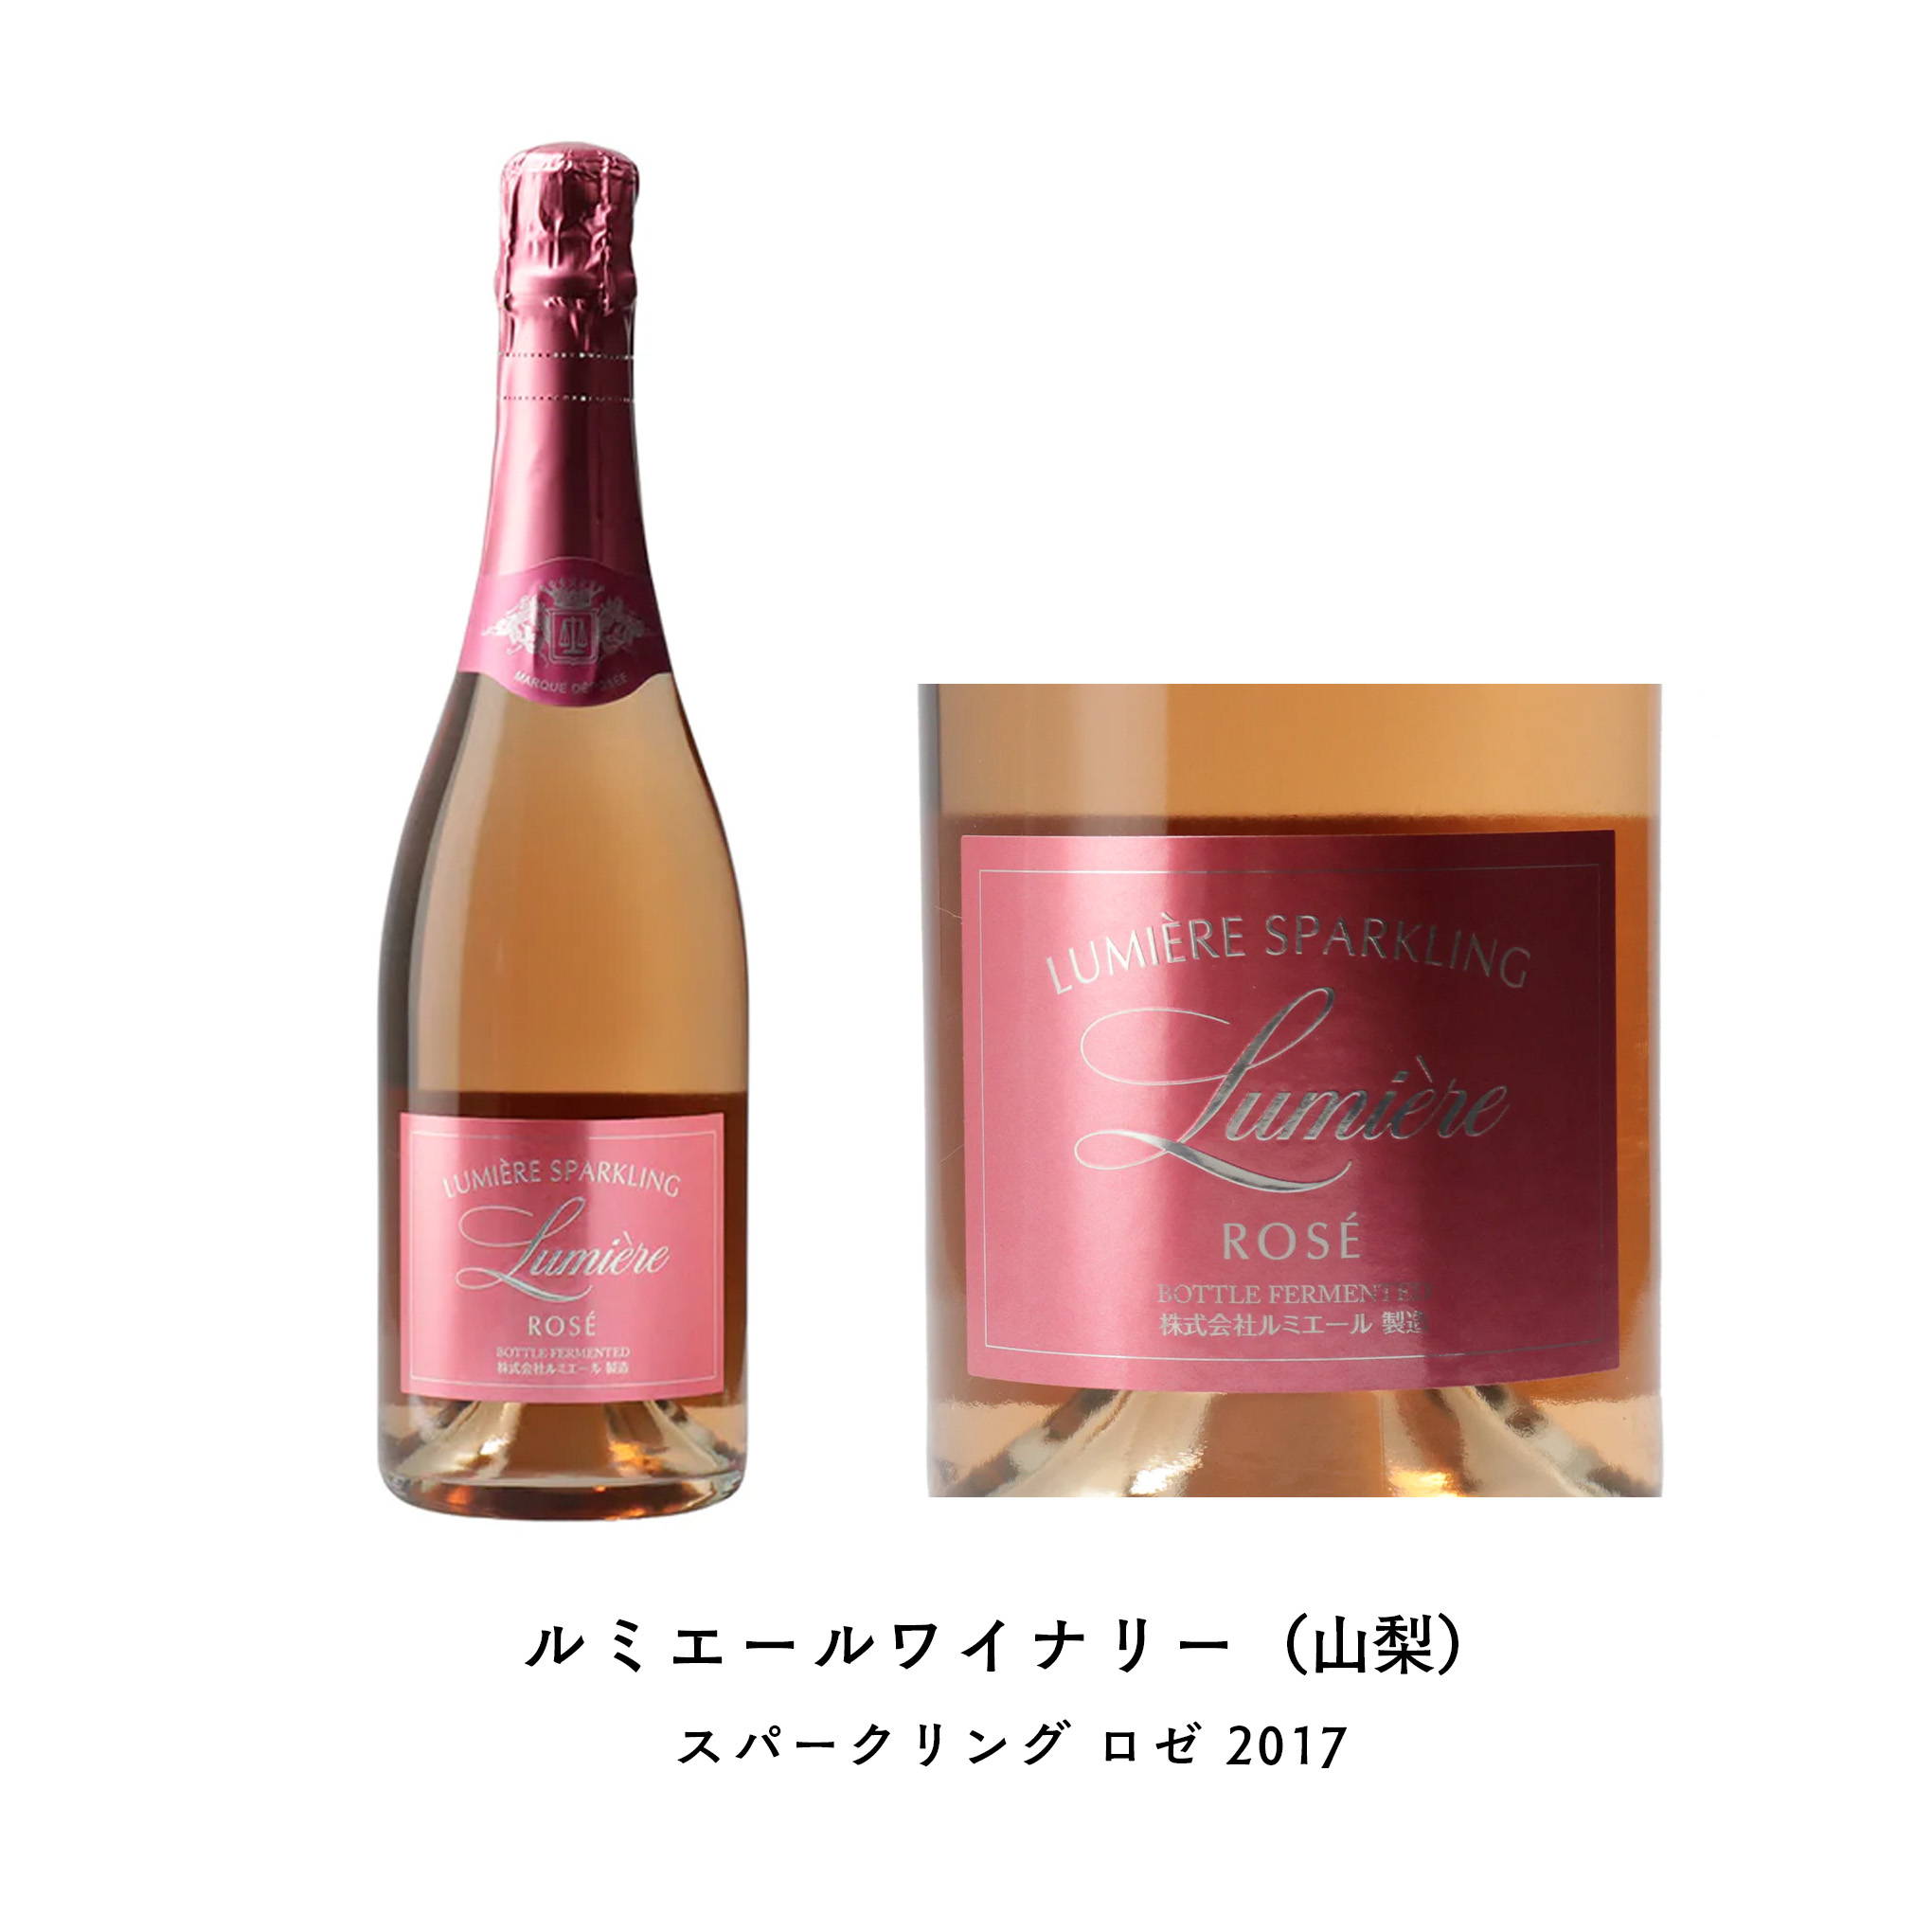 英国のスパークリングワイン専門誌主宰の「GLASS of BUBBLY AWARDS(グラス オブ バブリー アワード) 2020」でゴールド受賞！日本が誇る、本格的なロゼスパークリング。